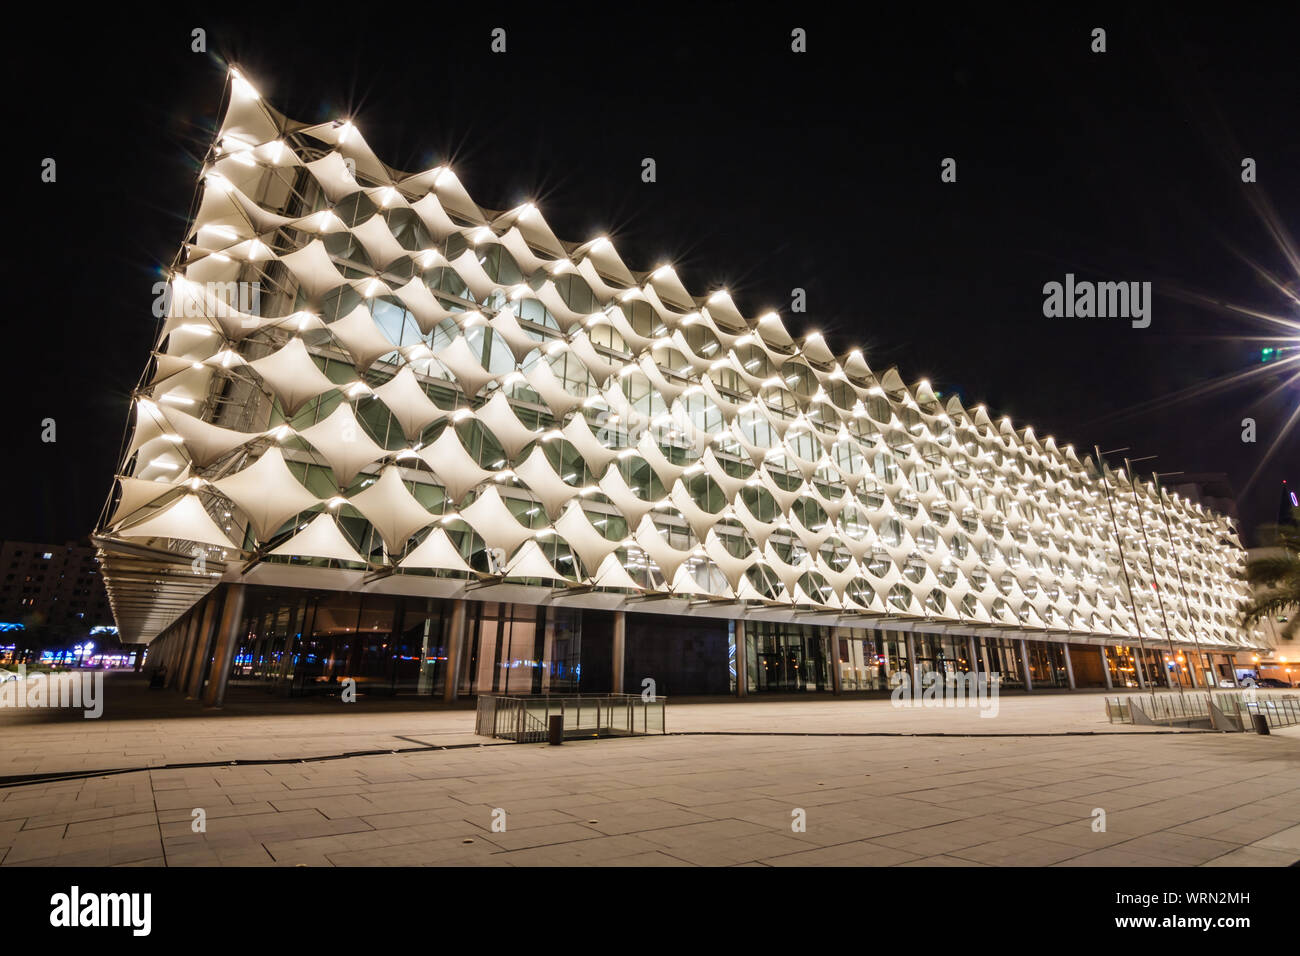 King Fahad National Library at night, Riyadh Stock Photo